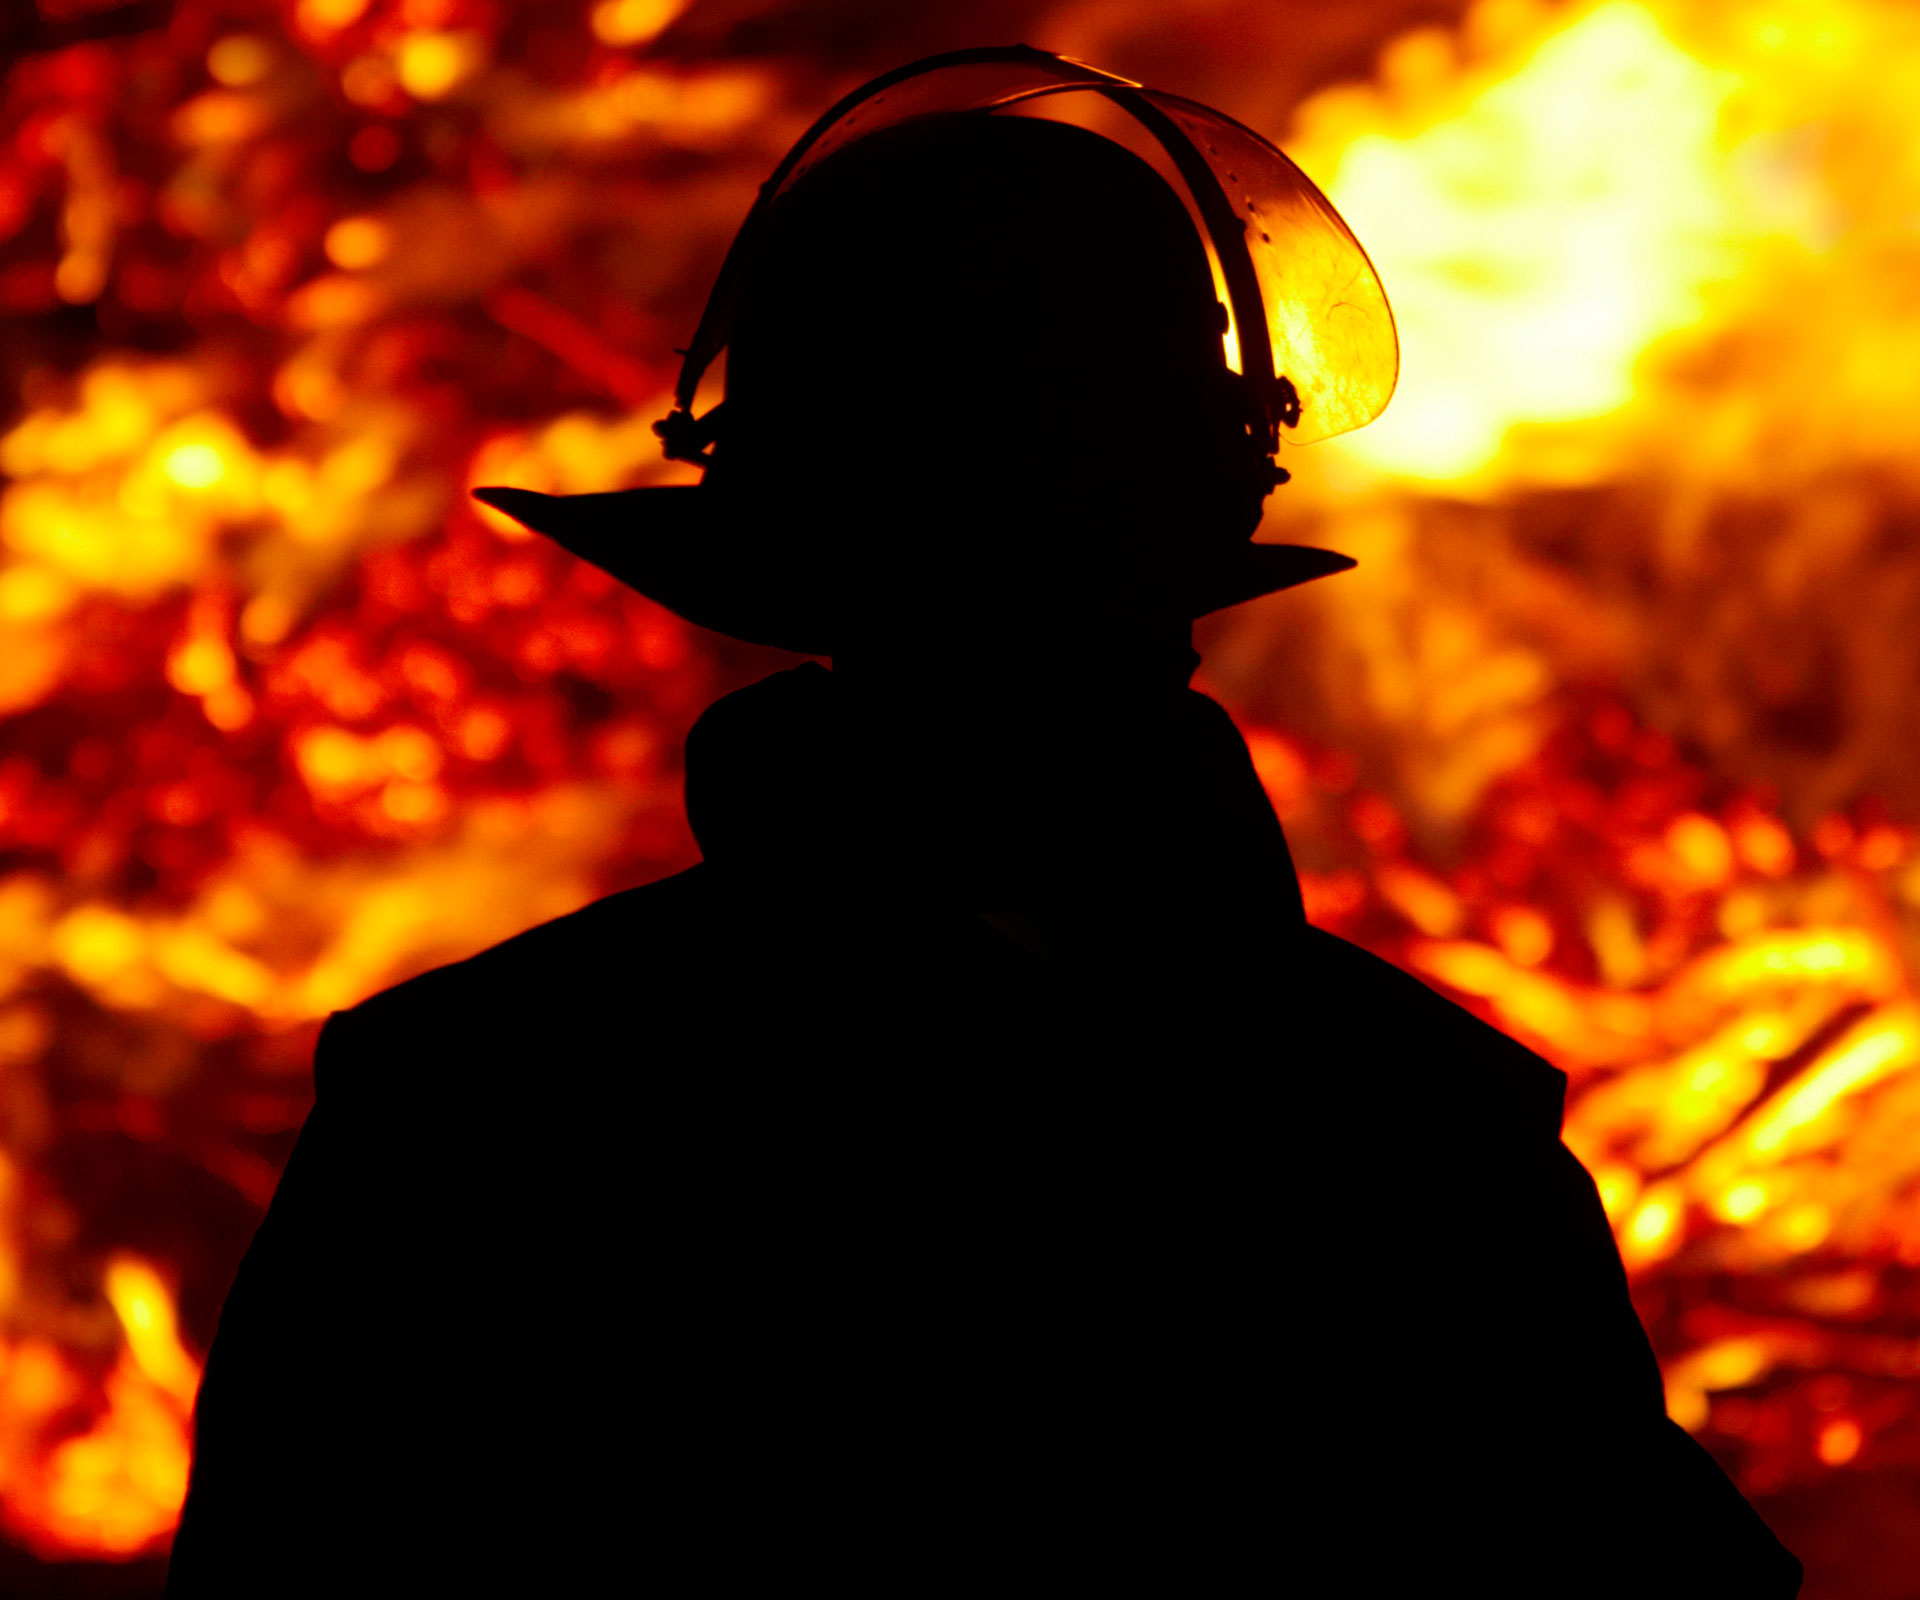 Fireman raped girl, 9, he rescued from blaze